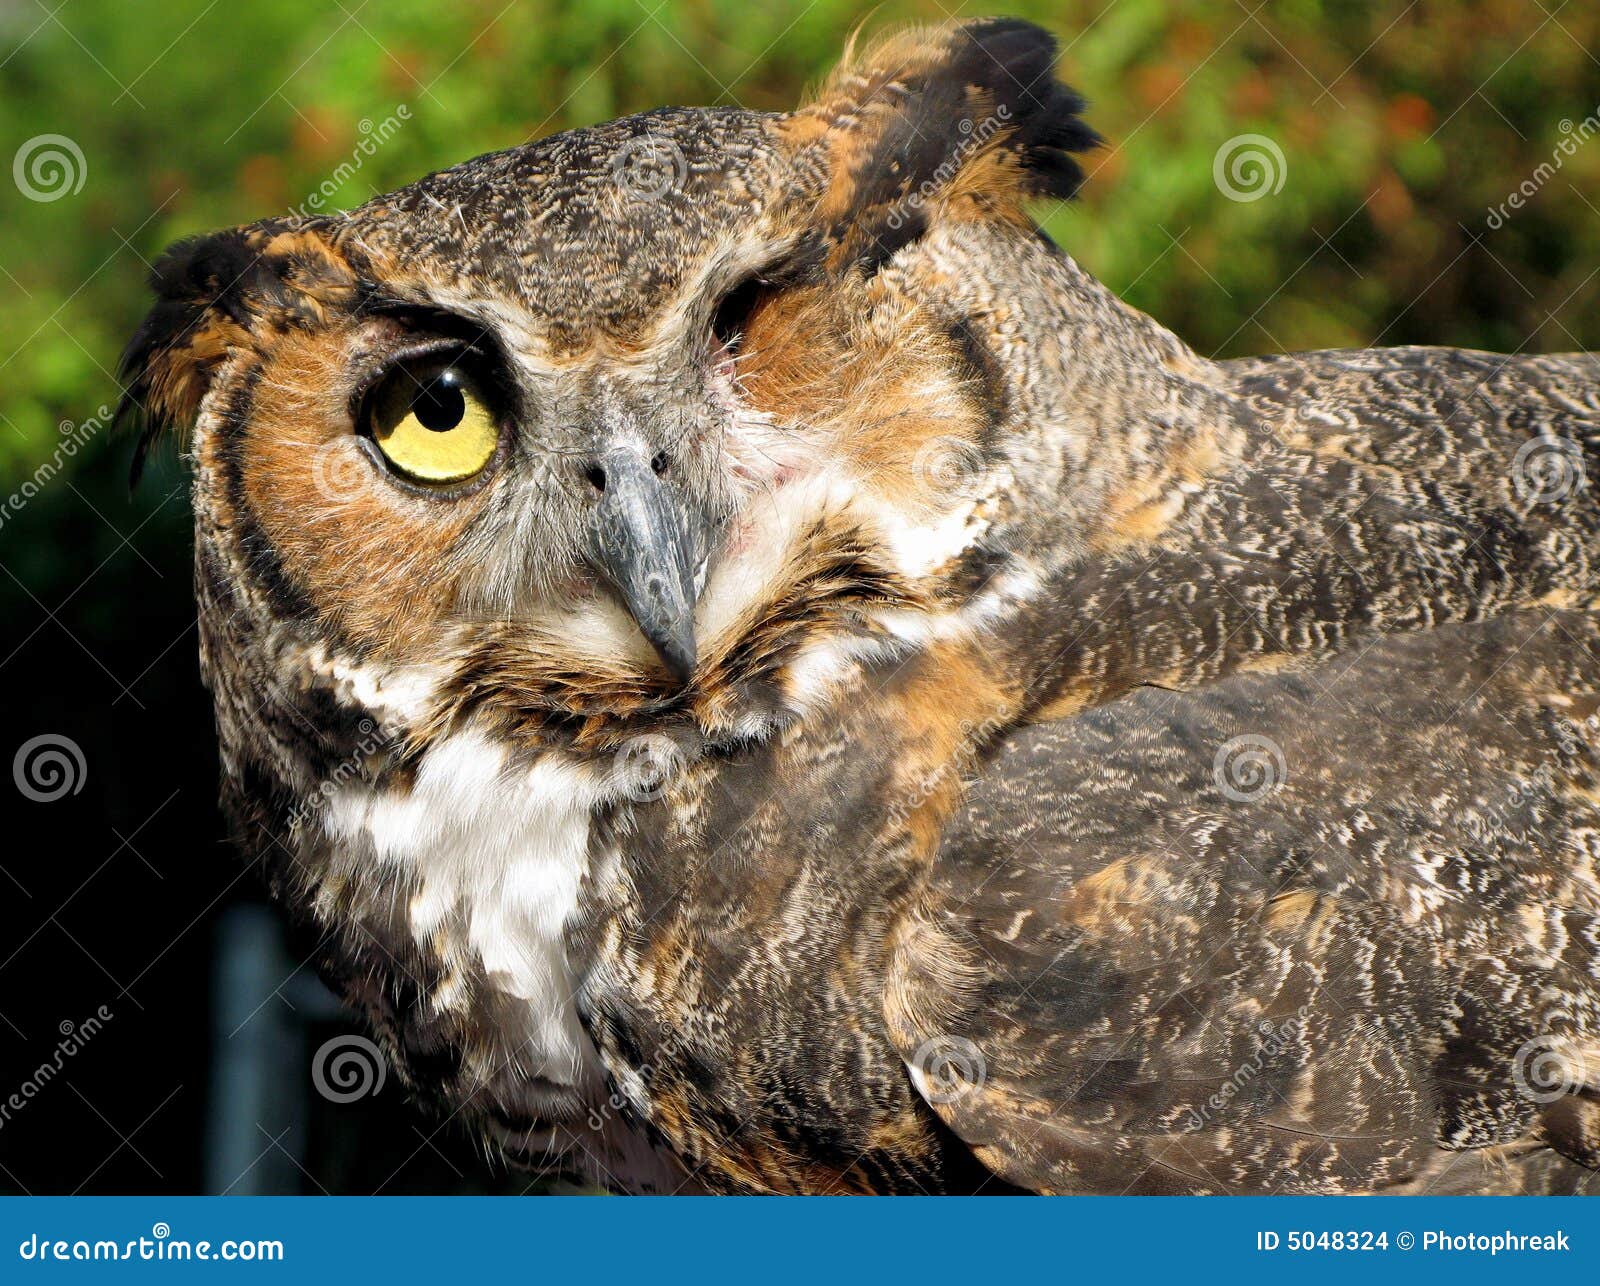 One-Eyed Owl Stock Images - Image: 5048324